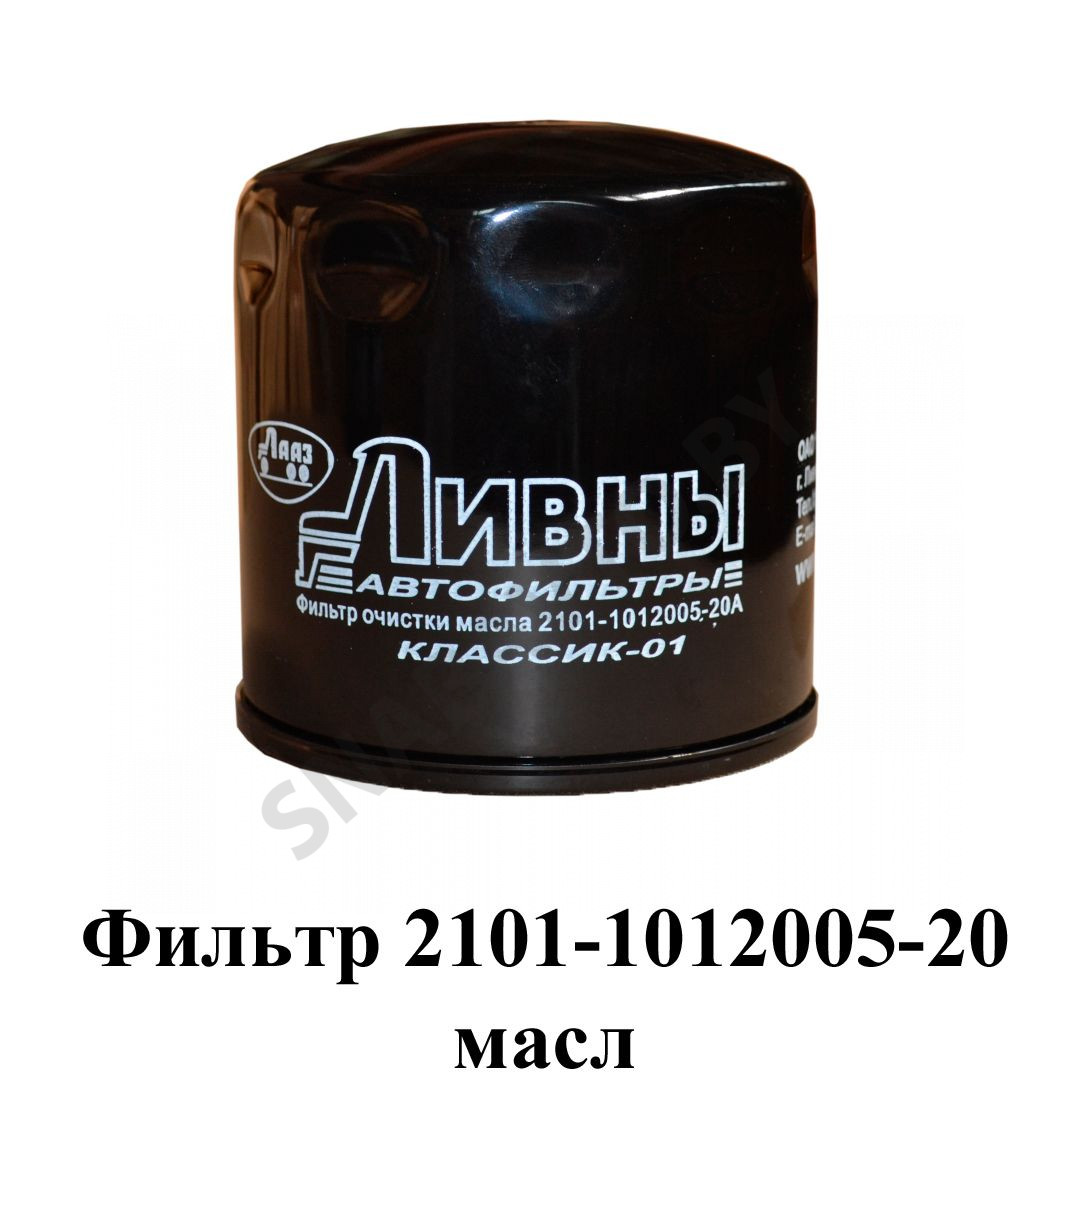 Фильтр очистки масла и его сменный элемент 2101-1012005-20